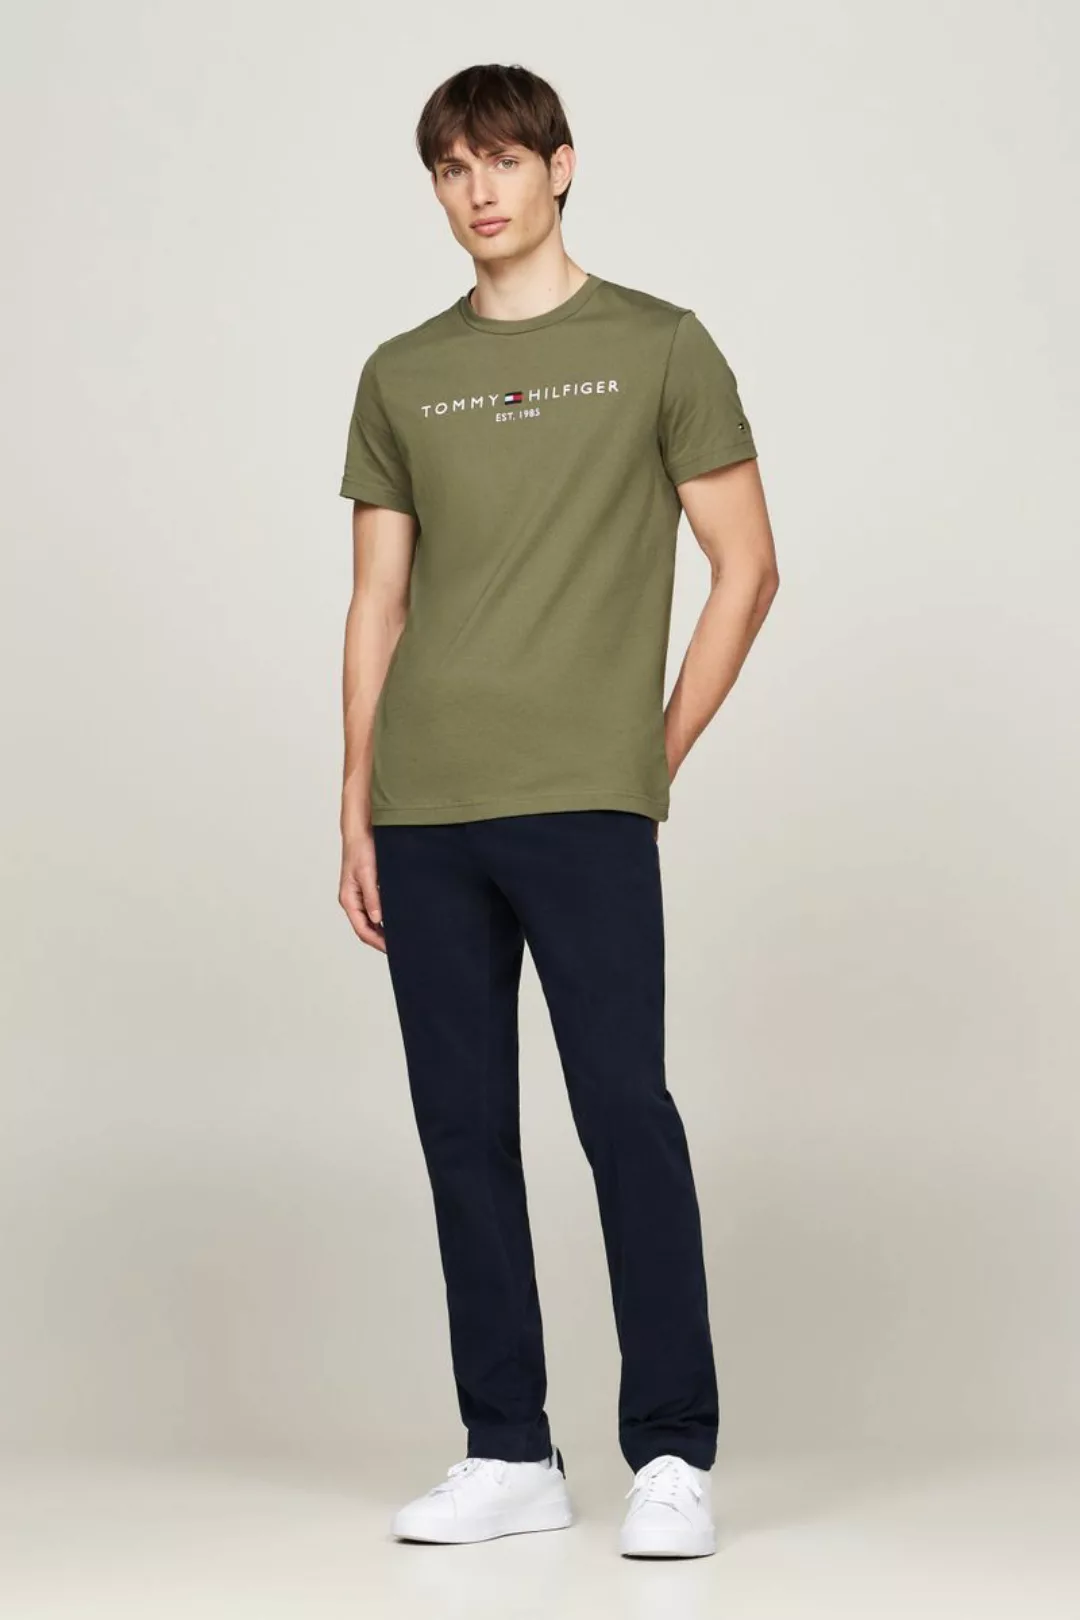 Tommy Hilfiger T-shirt Logo Olivgrün - Größe S günstig online kaufen